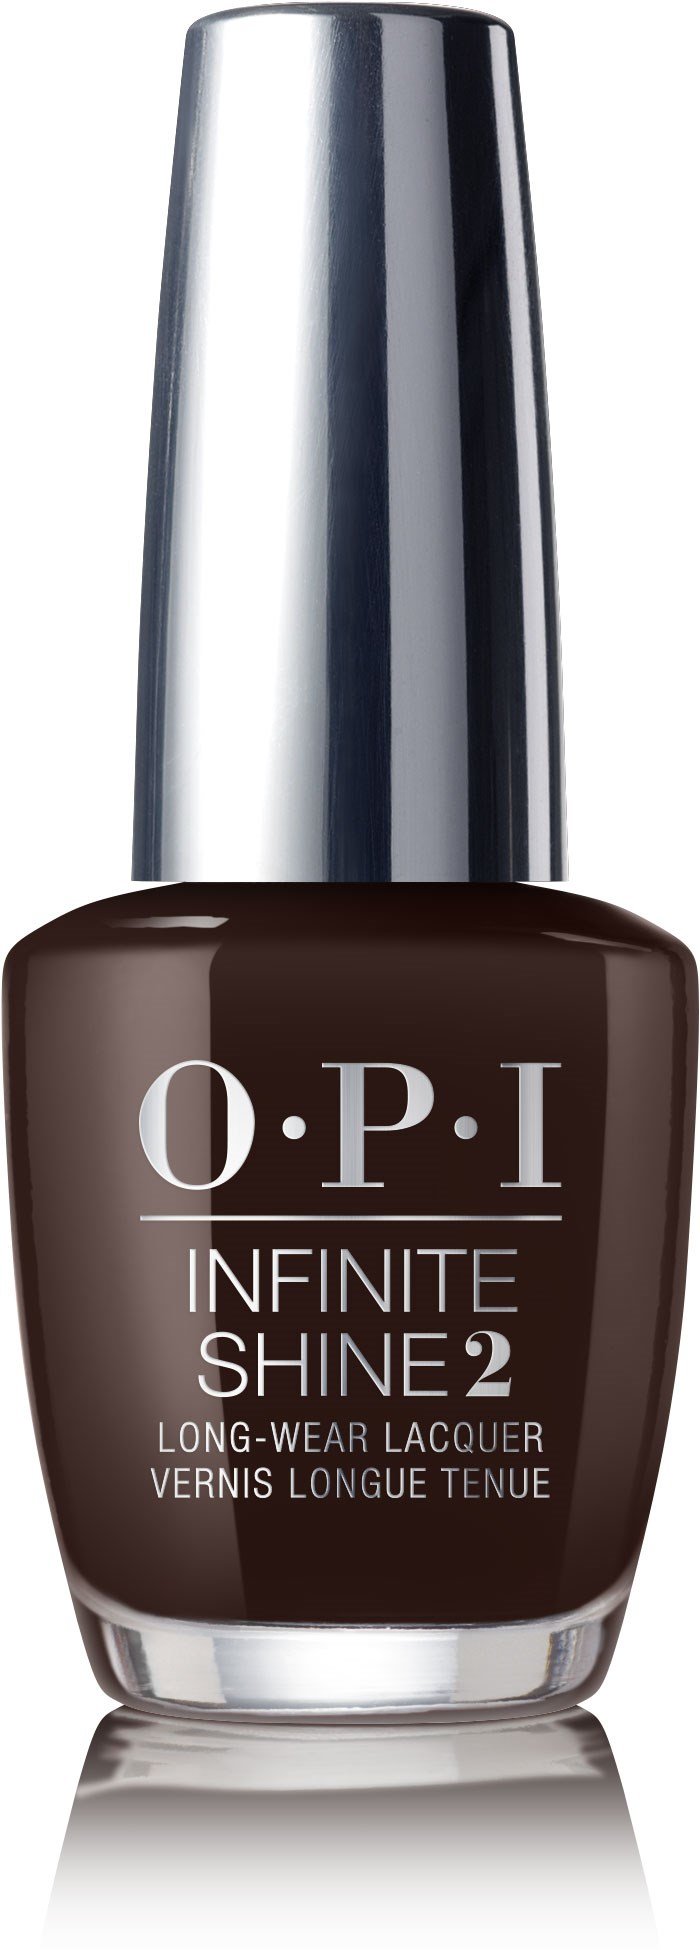 OPI Infinite Shine - Shh... ¡Es ultrasecreto!